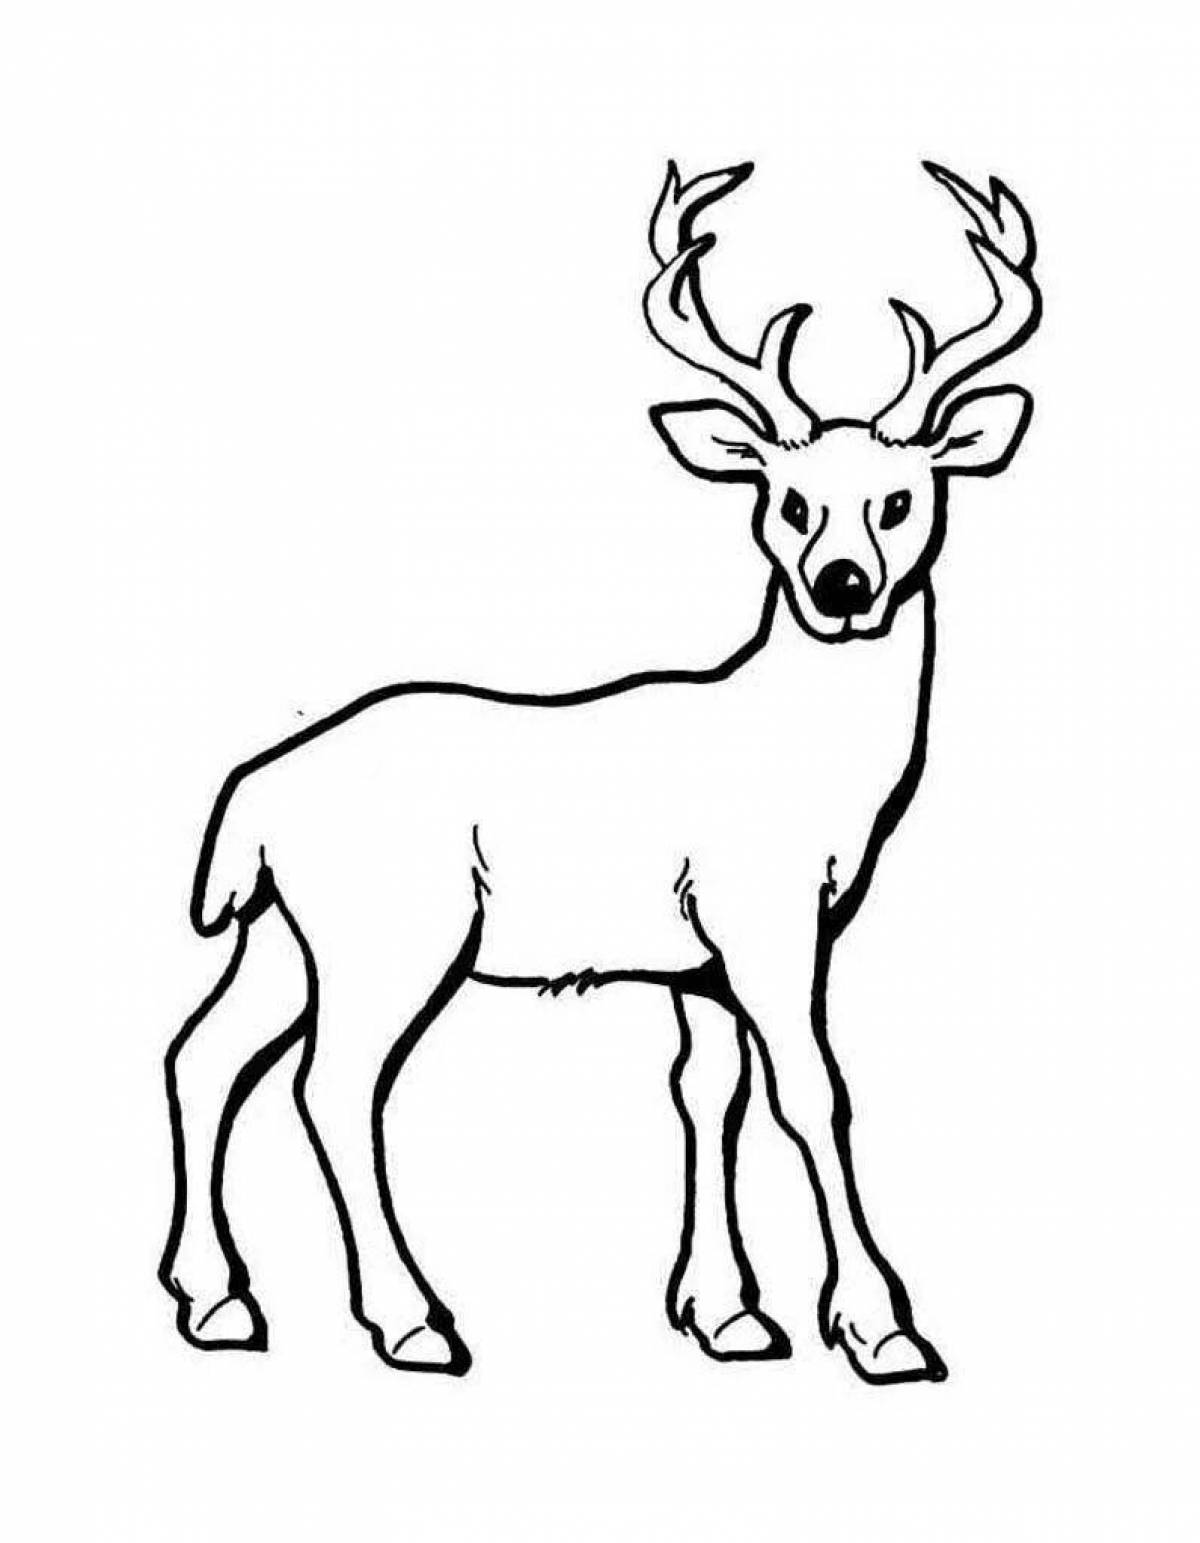 Charming deer drawing